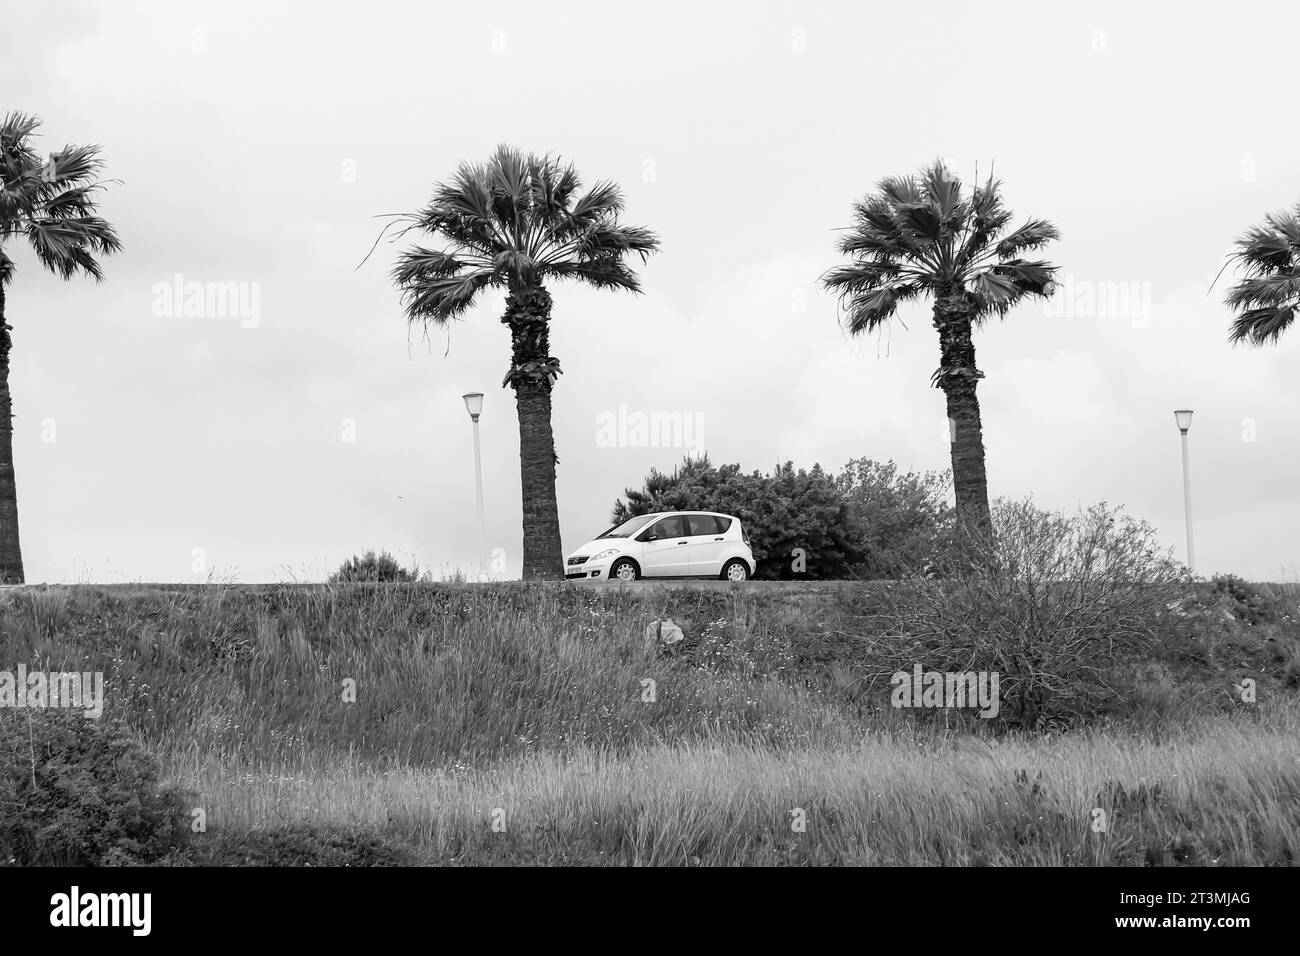 Mercedes-Benz classe A voiture sous-compacte blanche de première génération garée entre des palmiers bordant une route de rue hors d'un champ de verdure en noir et blanc Banque D'Images